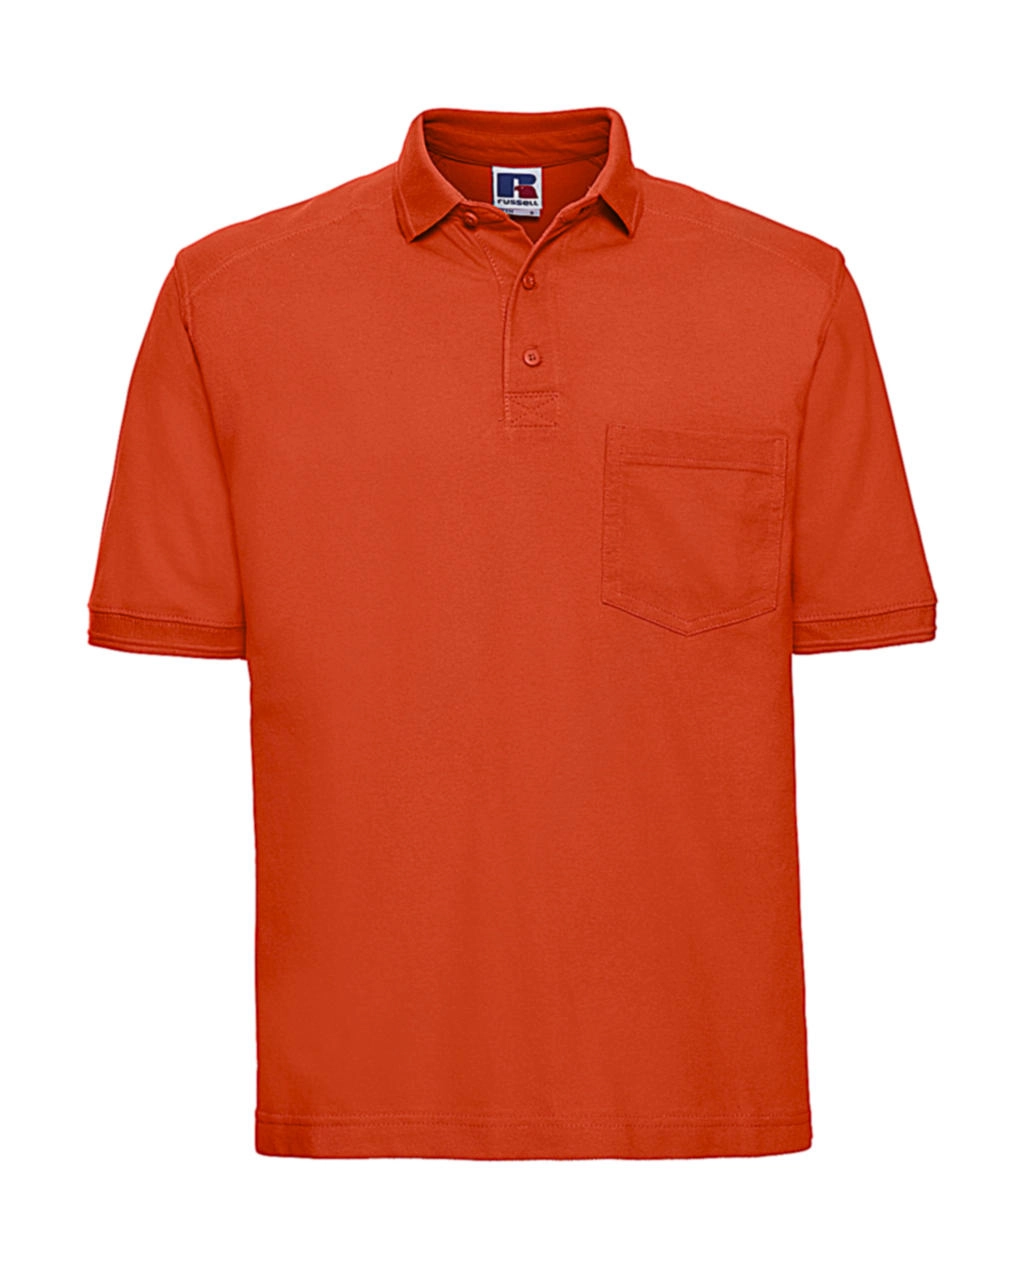 Heavy Duty Workwear Polo zum Besticken und Bedrucken in der Farbe Orange mit Ihren Logo, Schriftzug oder Motiv.